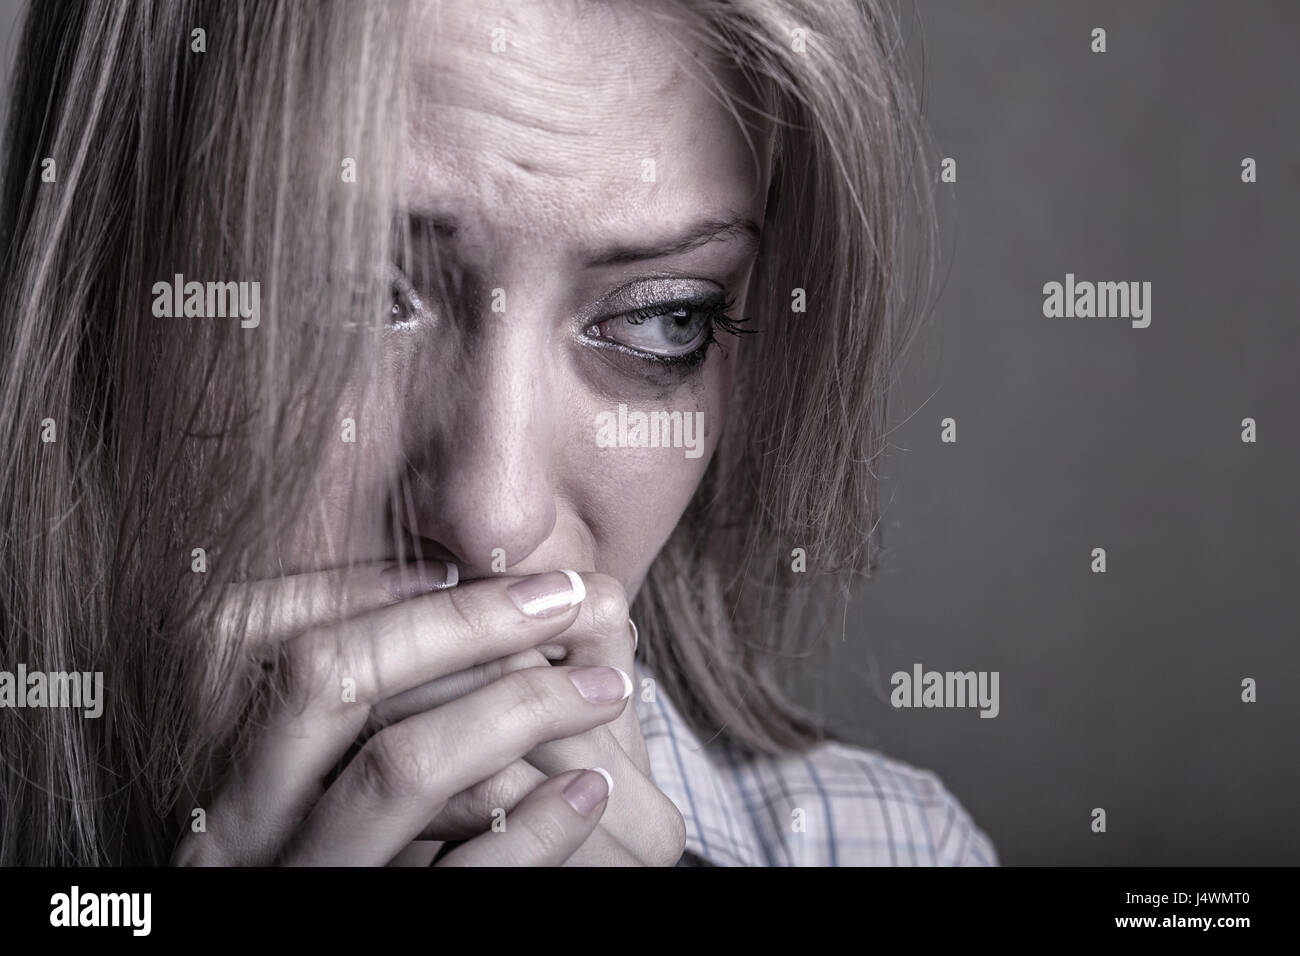 Trauriges Mädchen weinend auf einem dunklen Hintergrund Stockfoto